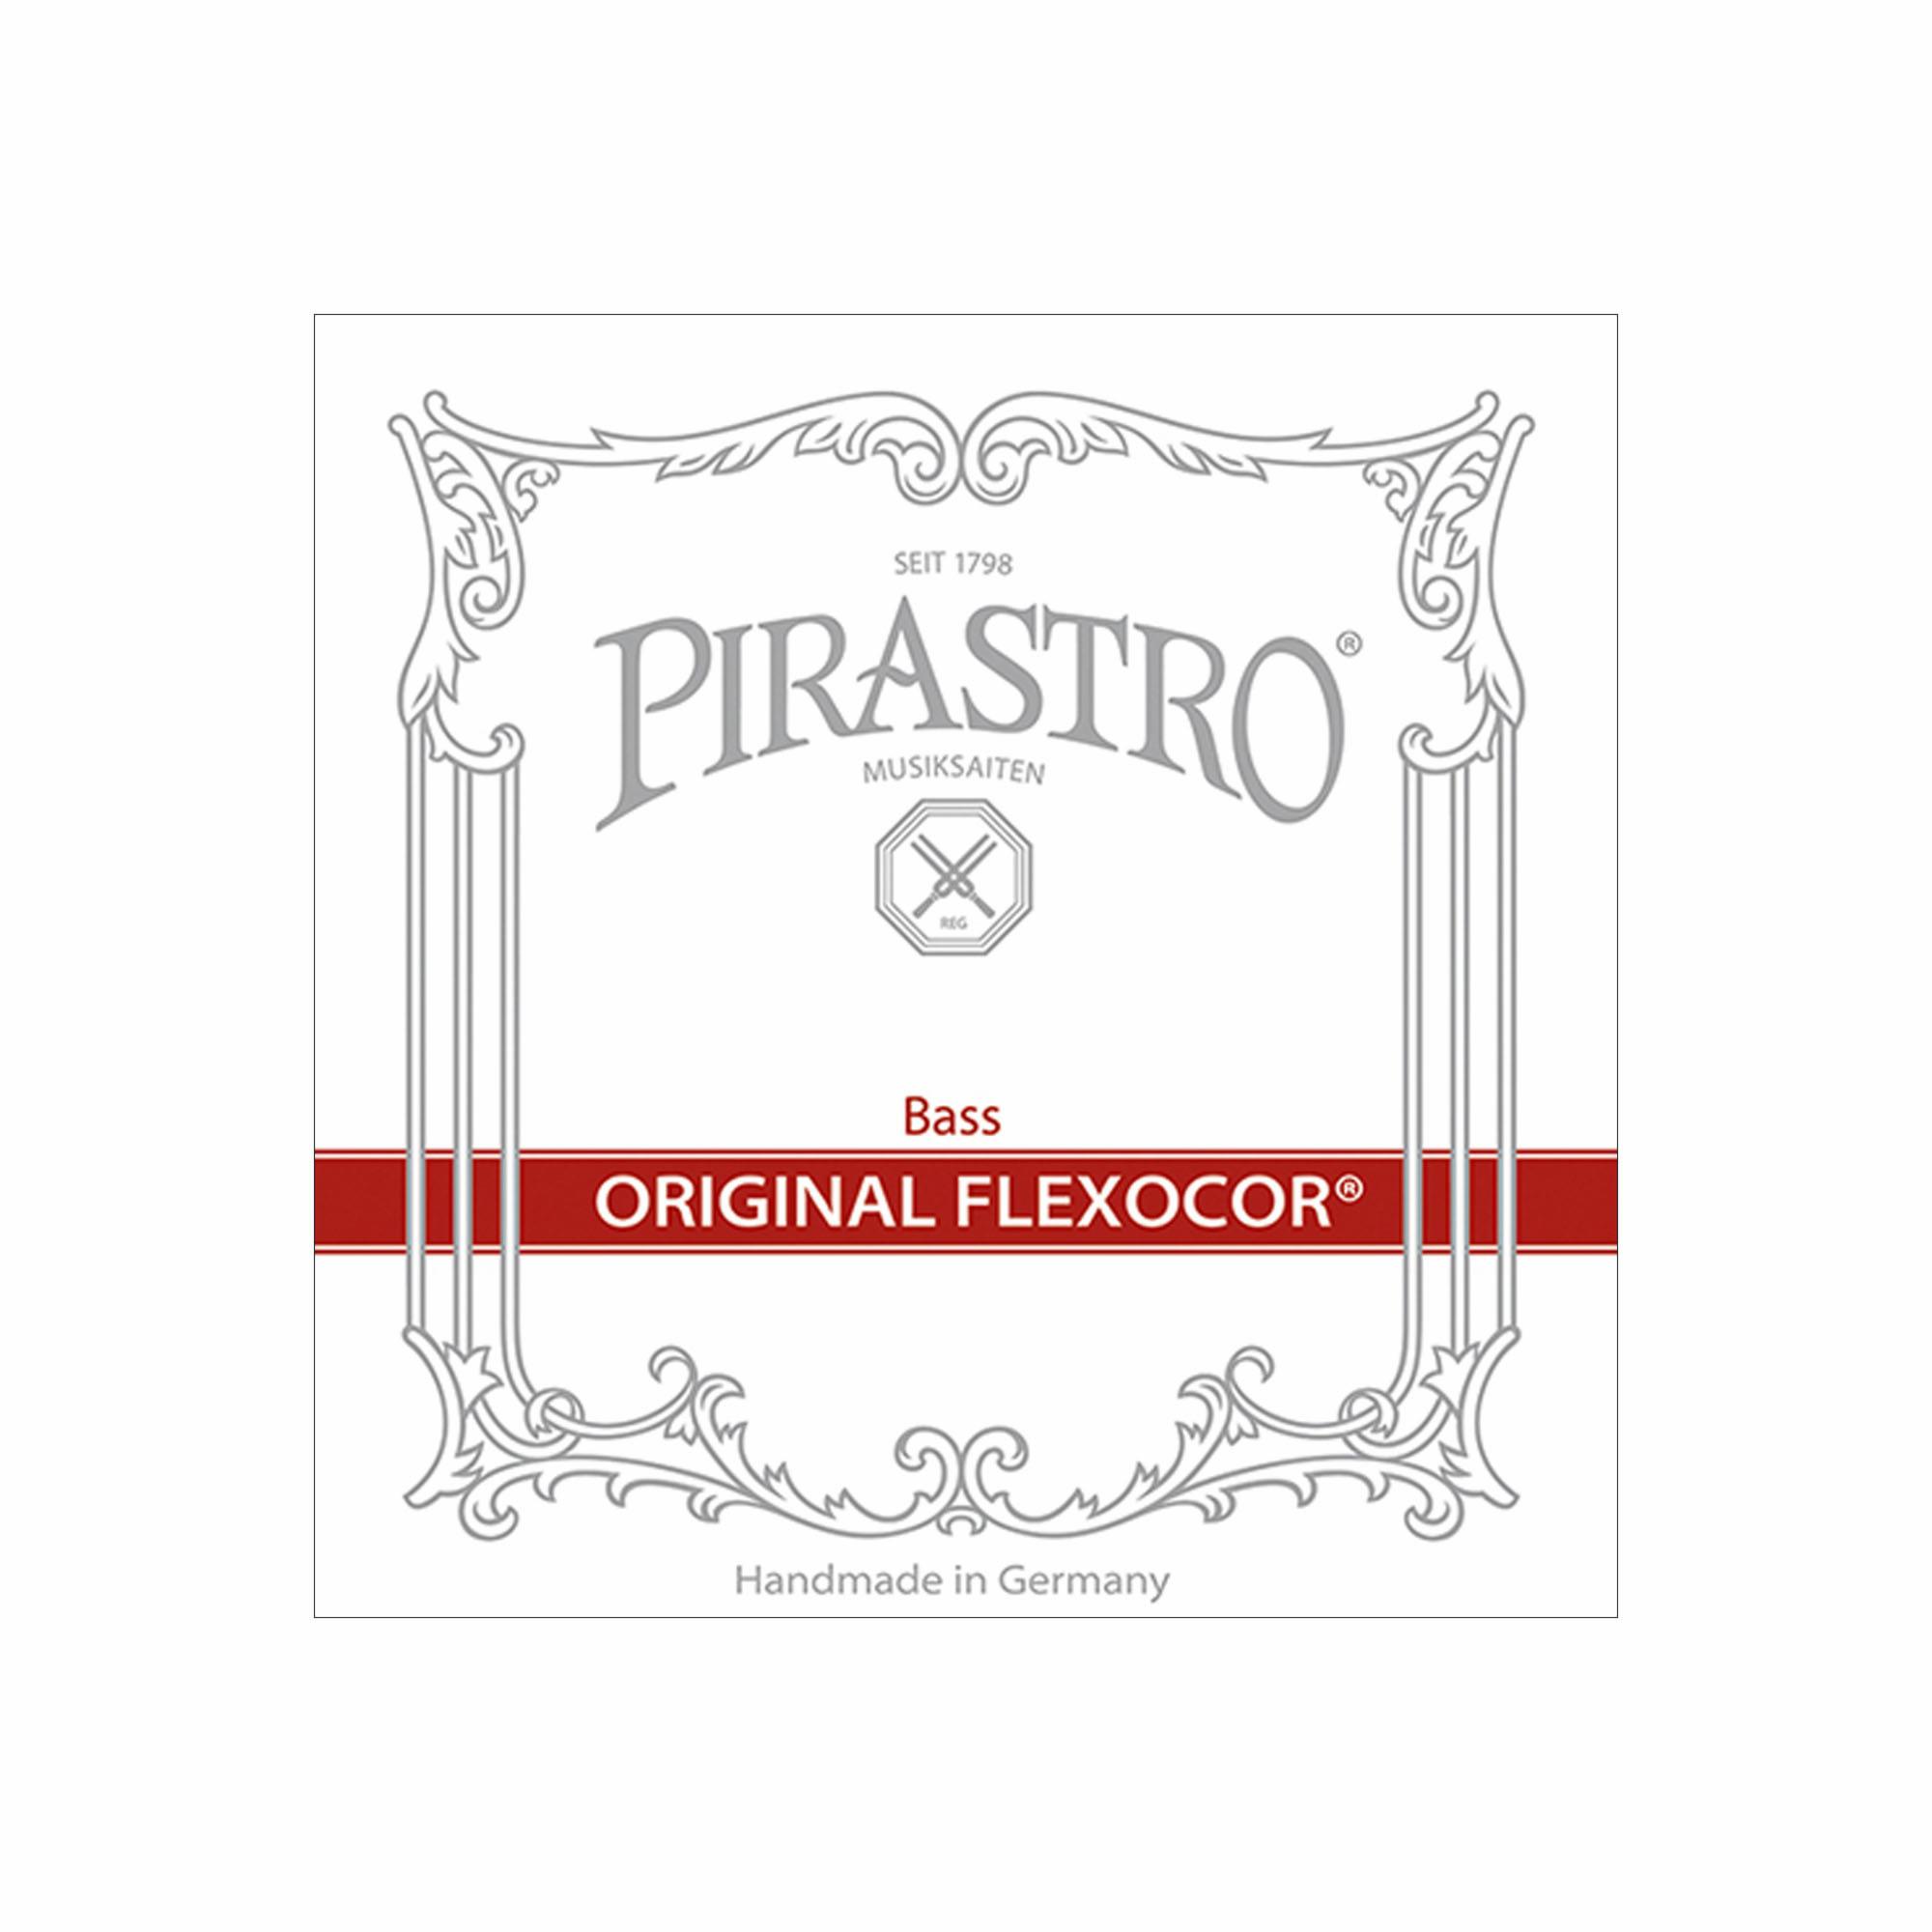 Pirastro Original Flexocor Bass Strings